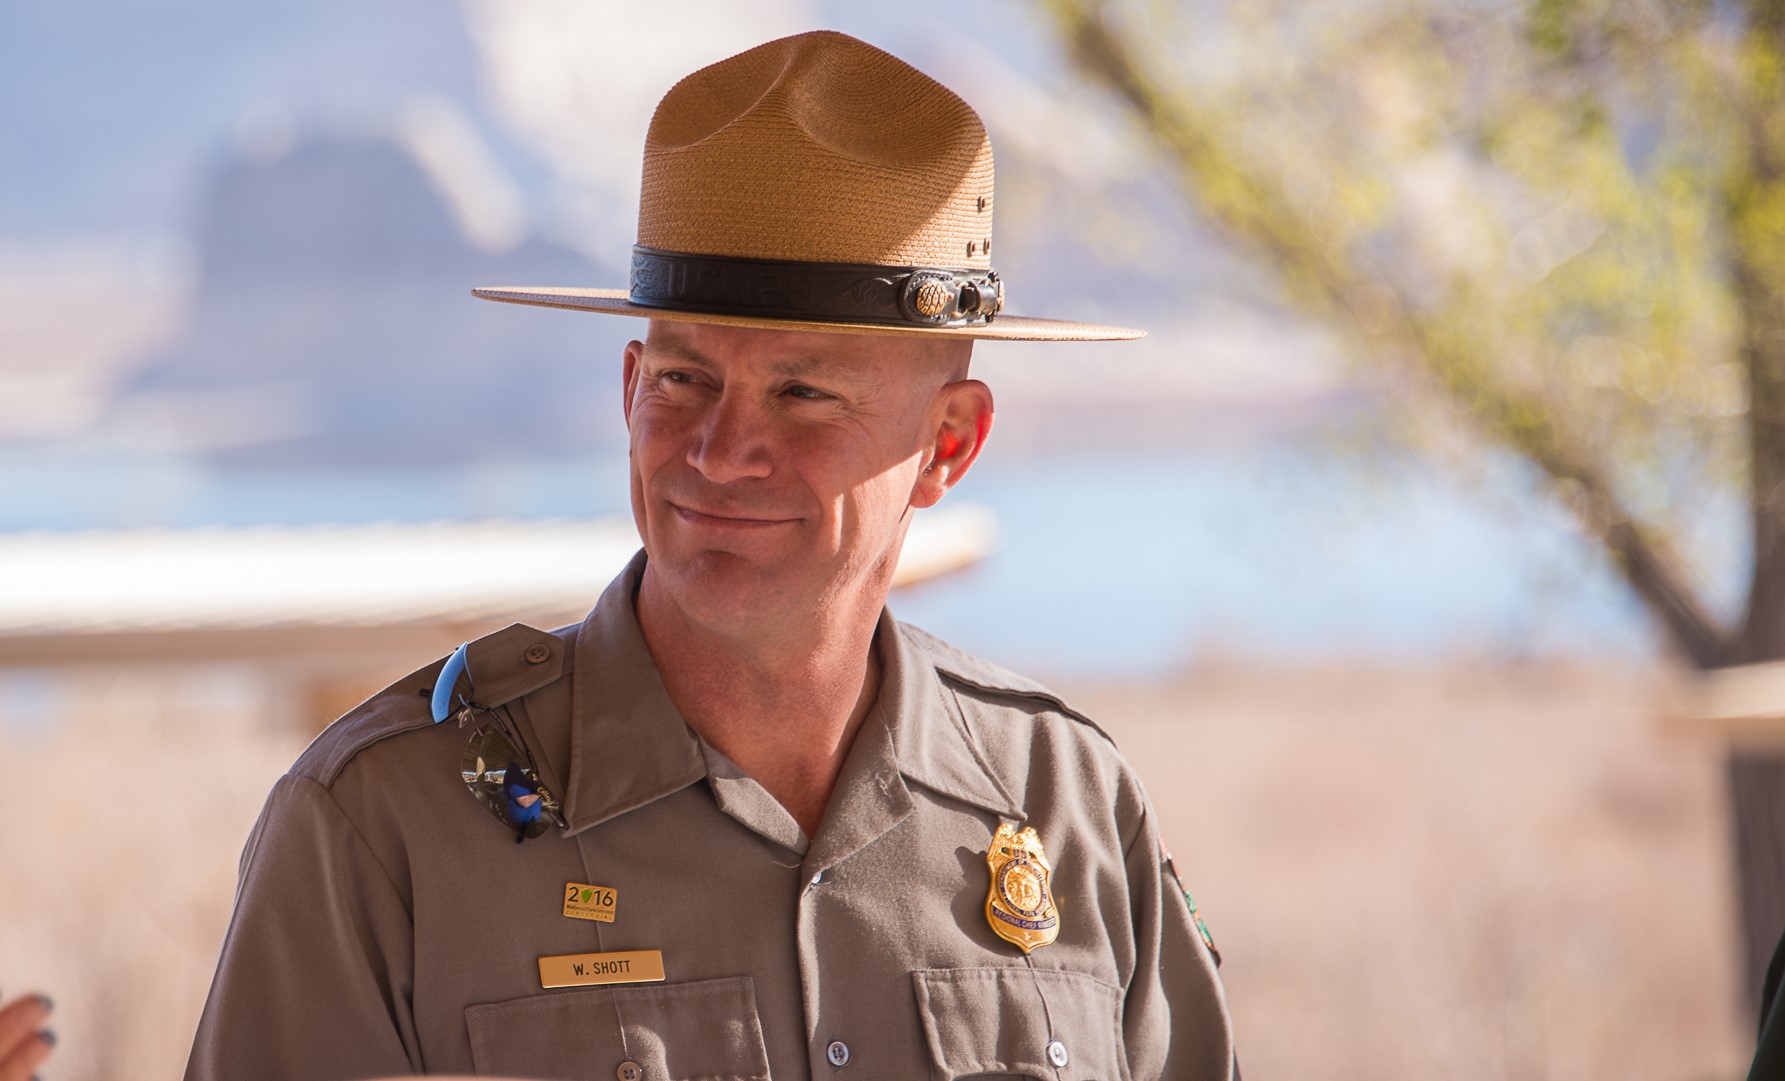 Park Ranger Superintendent Billy Shott smiles